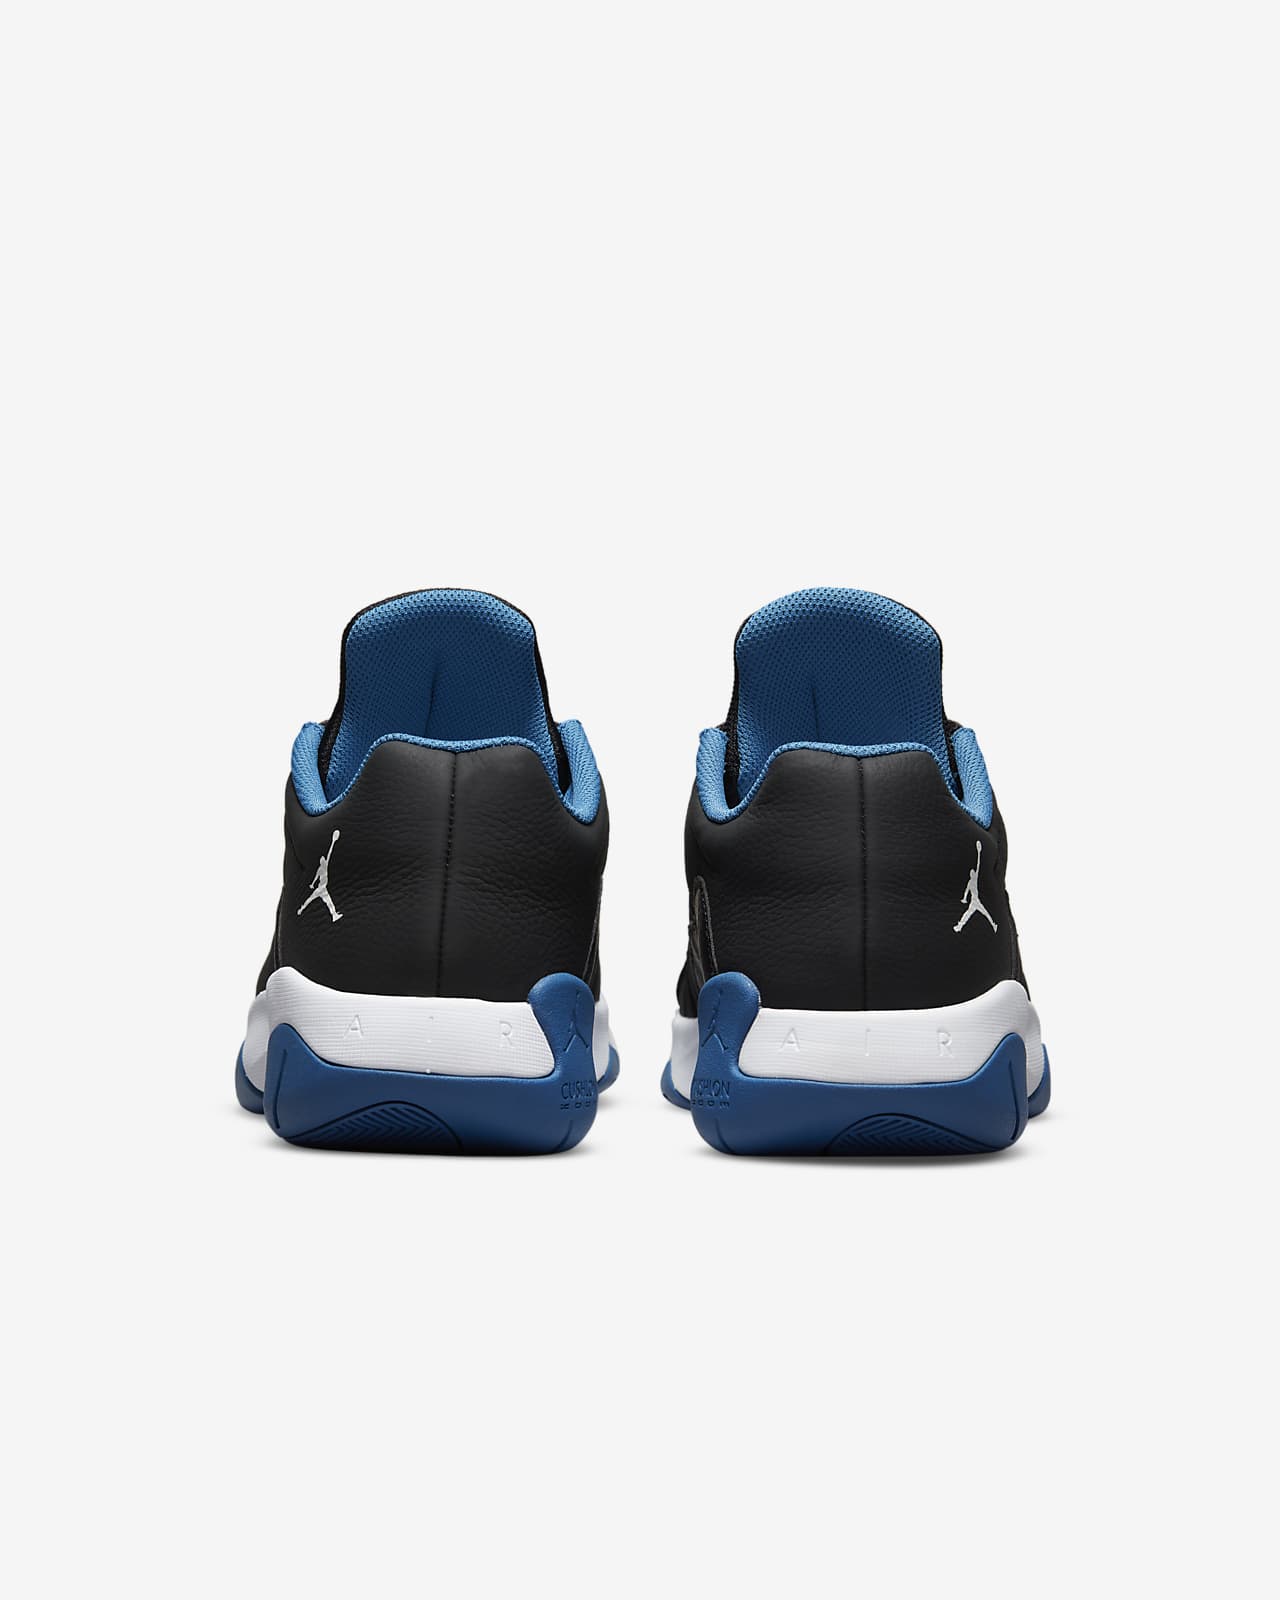 Air Jordan 11 CMFT Low Men's Shoes